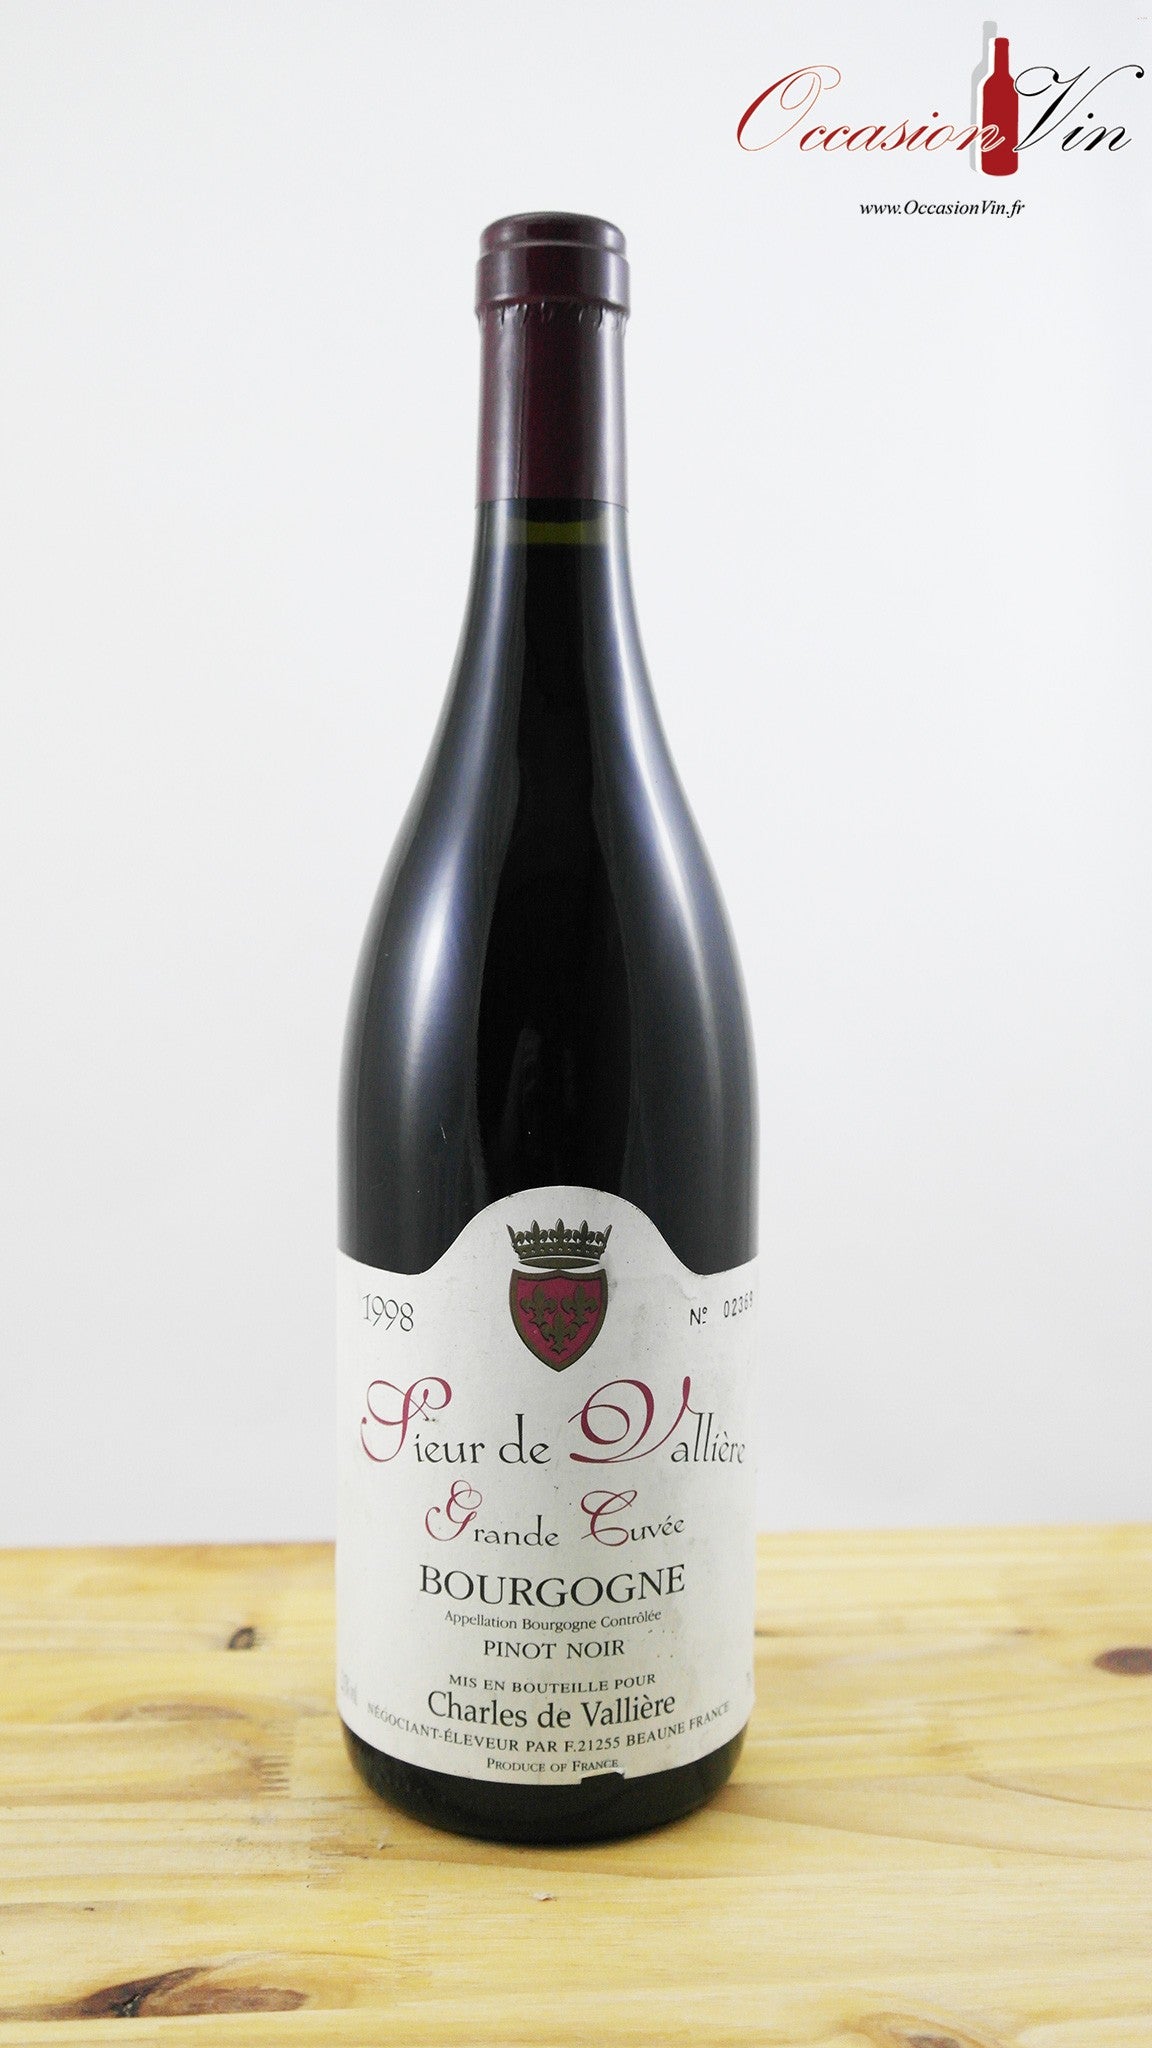 Sieur de Vallière Grande Cuvée Vin 1998